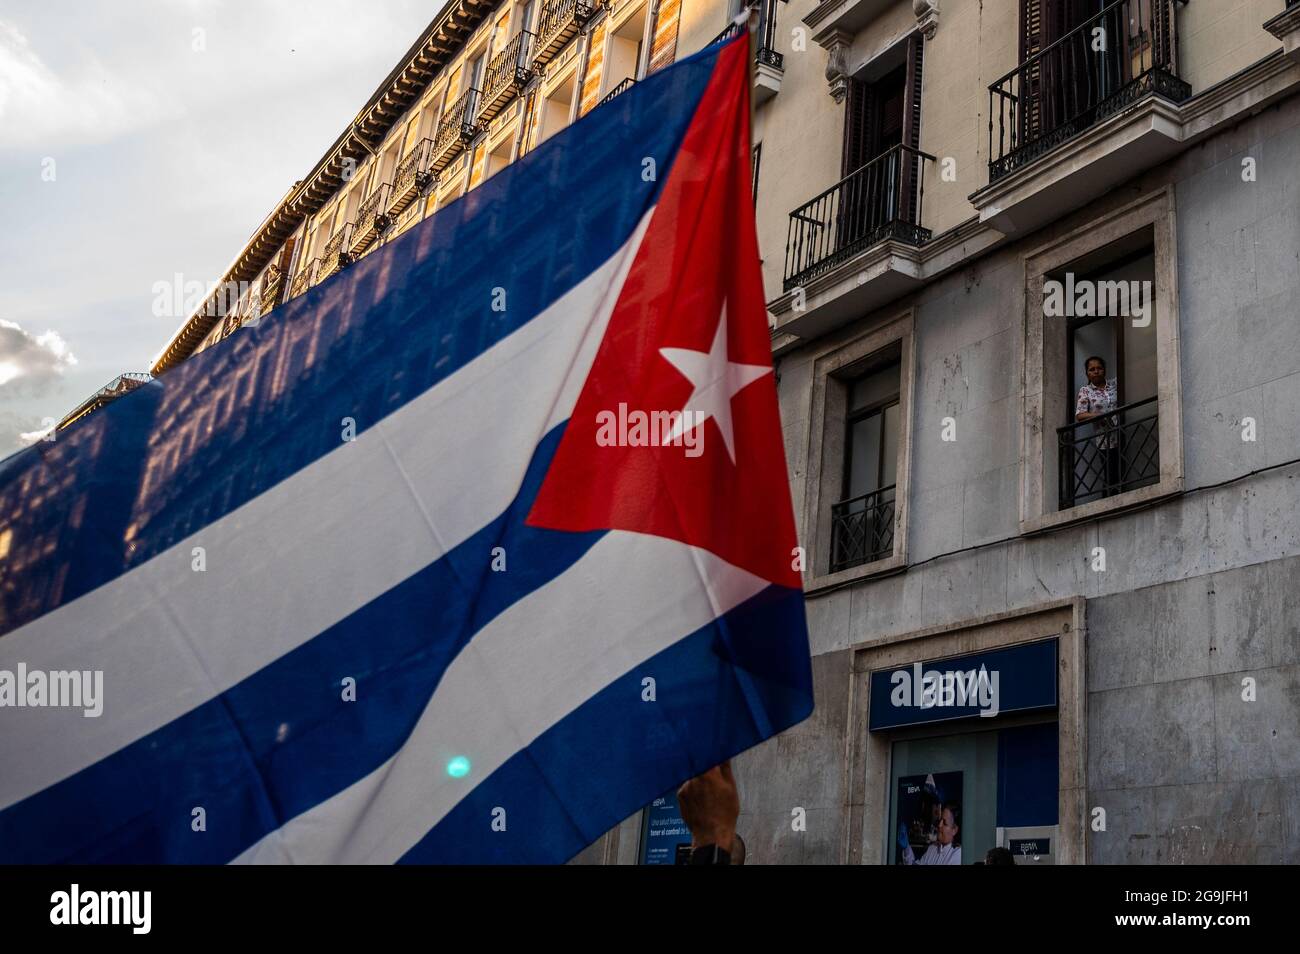 Madrid, Spagna. 26 luglio 2021. Una donna guarda da un balcone come manifestanti con bandiere passano durante una manifestazione contro l'embargo economico statunitense su Cuba, in coincidenza con il 26 luglio, il giorno in cui la rivoluzione cubana è iniziata nel 1953, 68 anni fa. Credit: Marcos del Mazo/Alamy Live News Foto Stock